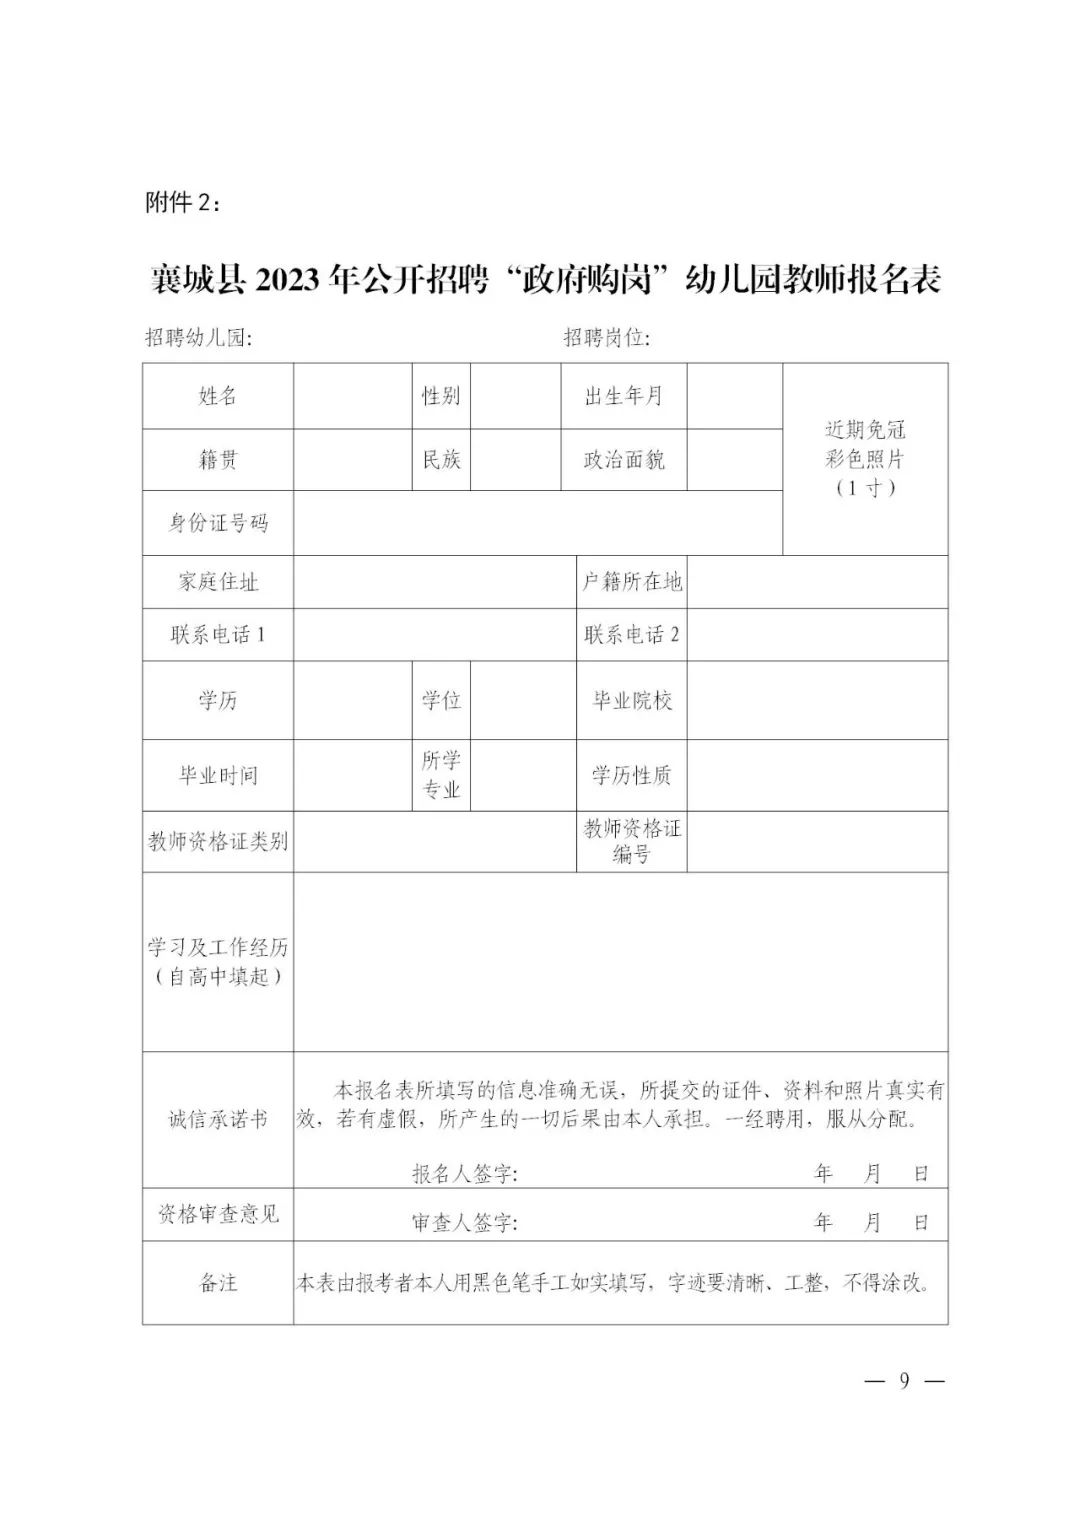 2023年许昌襄城县公开招聘“政府购岗”幼儿园教师90人公告